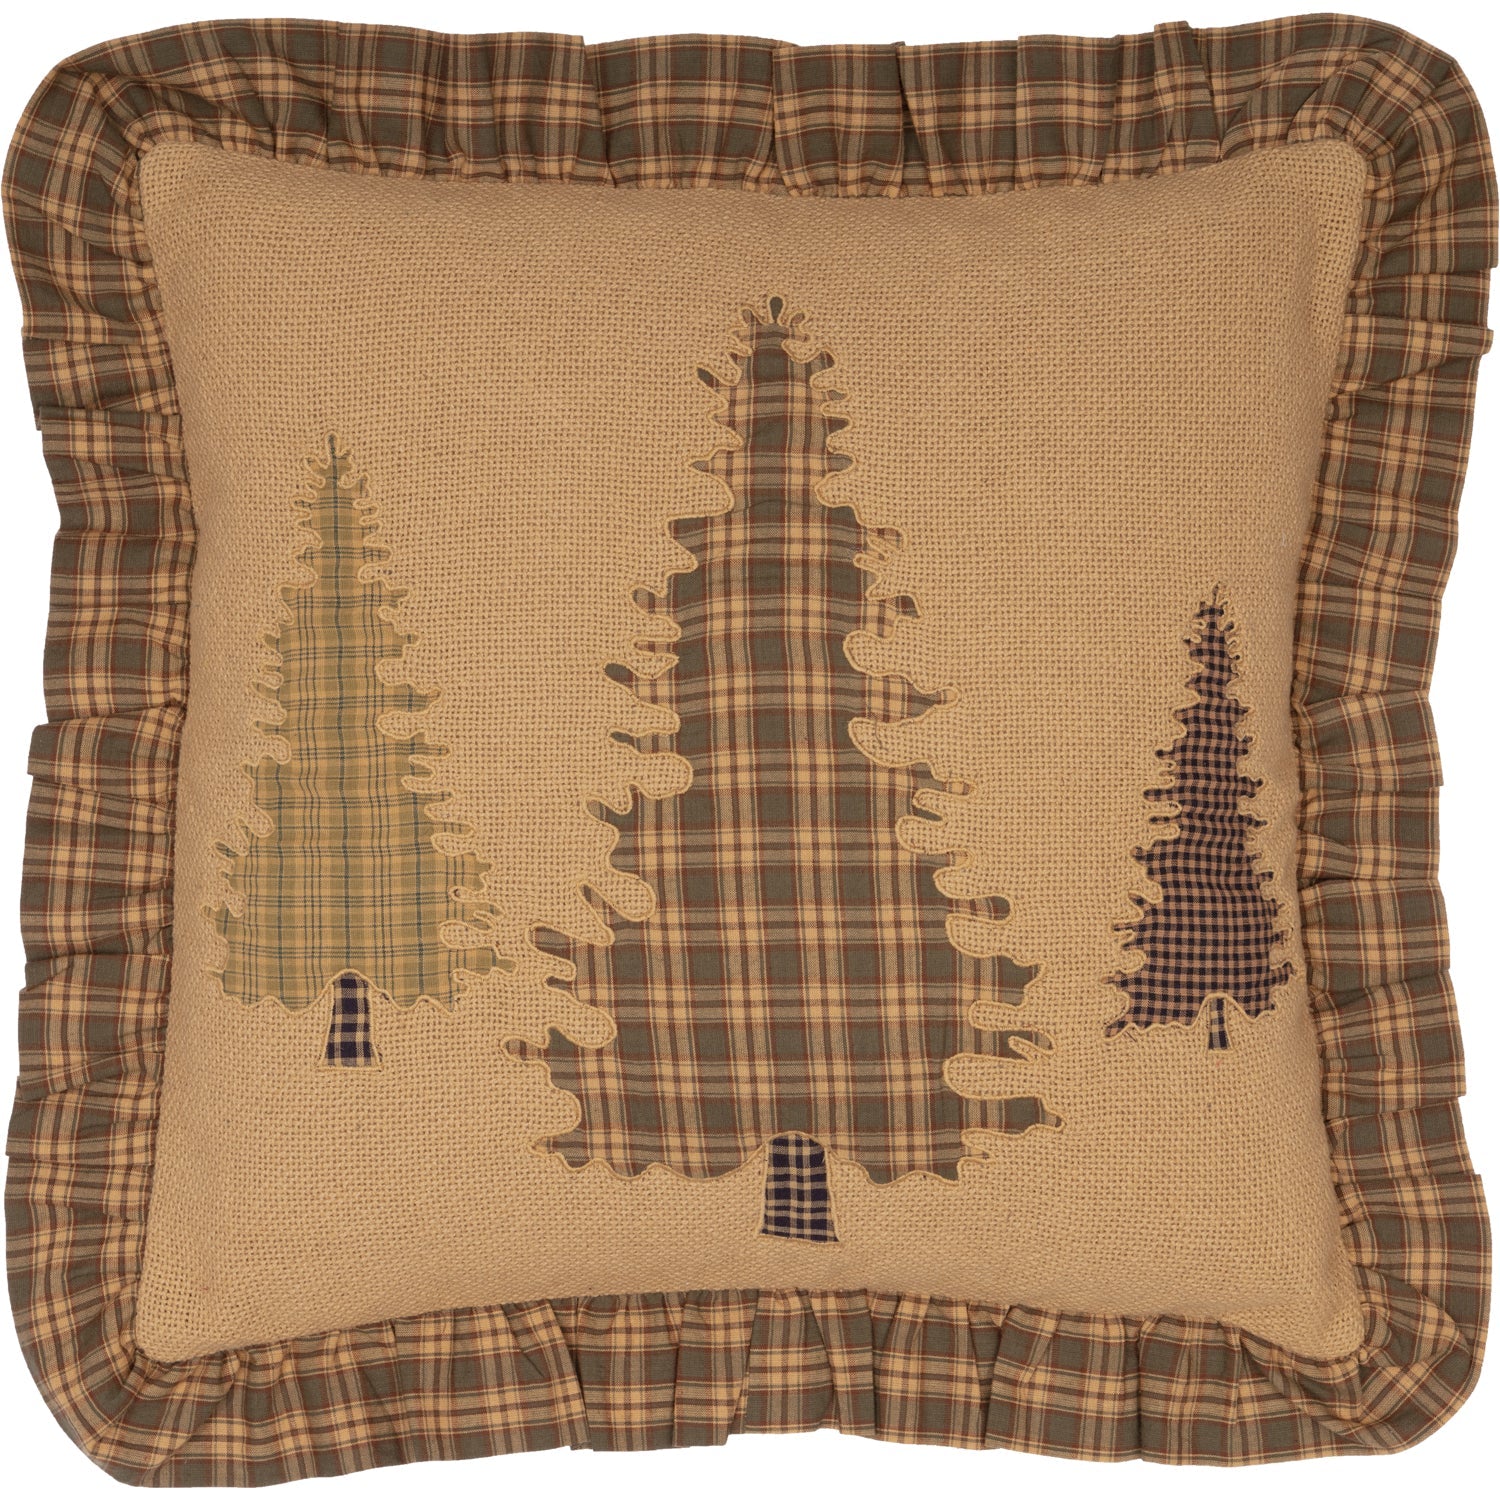 Cedar Ridge Tree Applique Pillow 18x18 VHC Brands